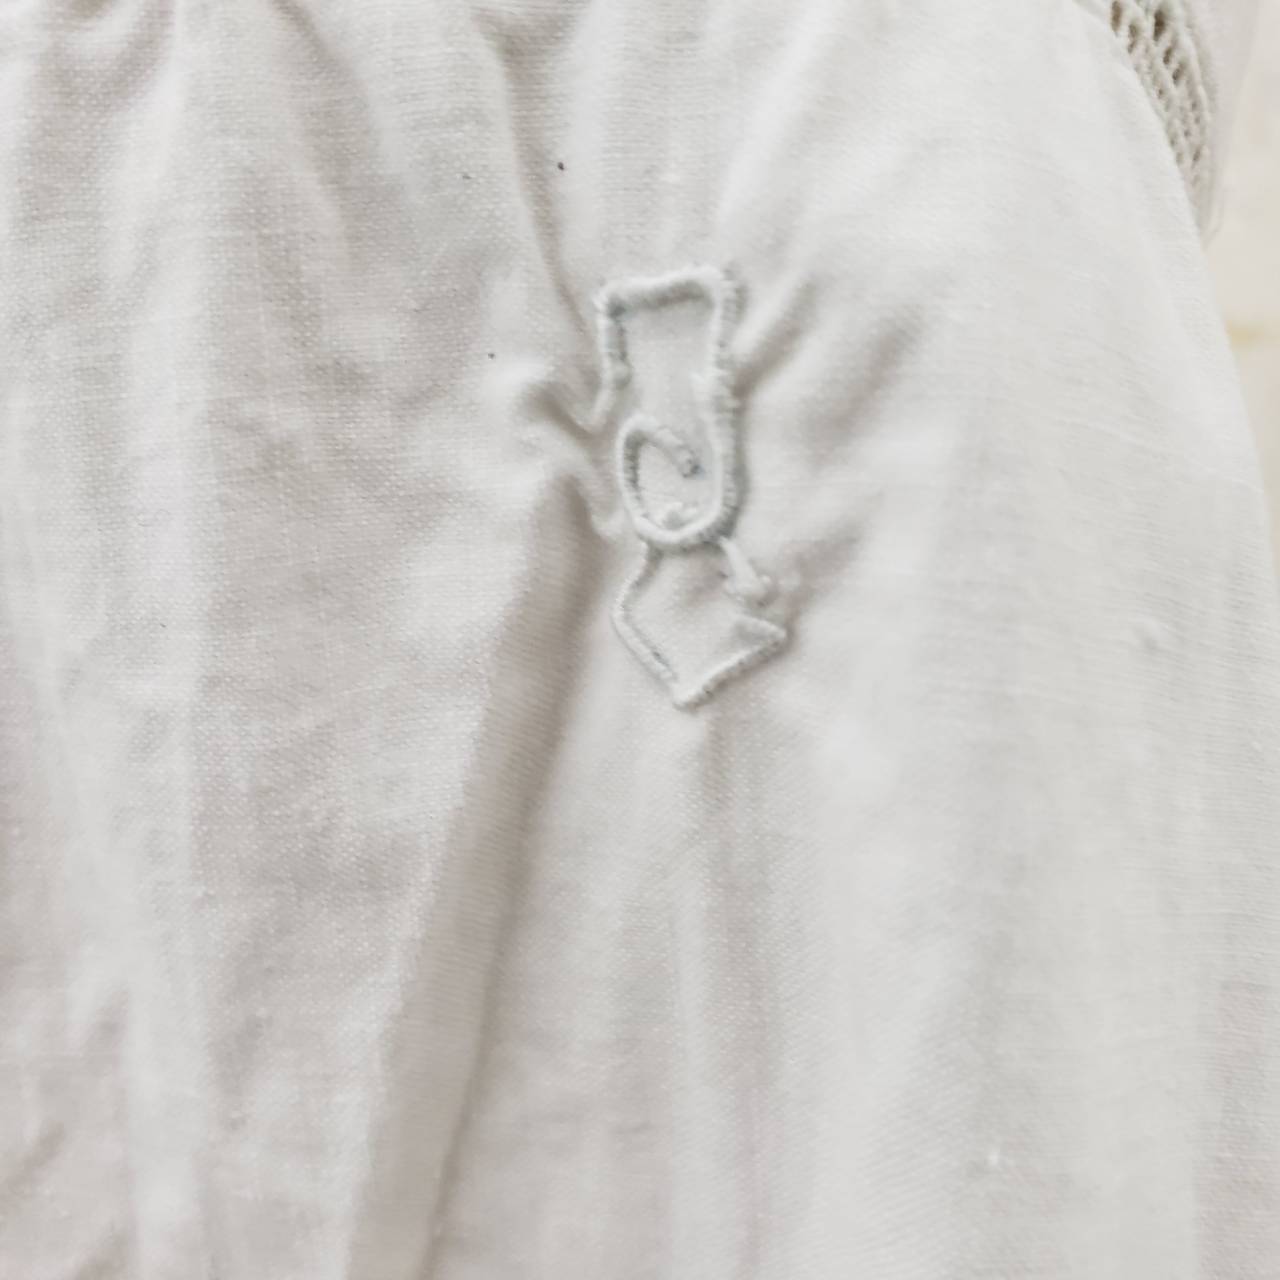 Euro Vintage(ヨーロッパヴィンテージ) Hirari_フレンチカットワークレース刺繍キャミソール 表記なし(Lサイズ程度) ホワイト